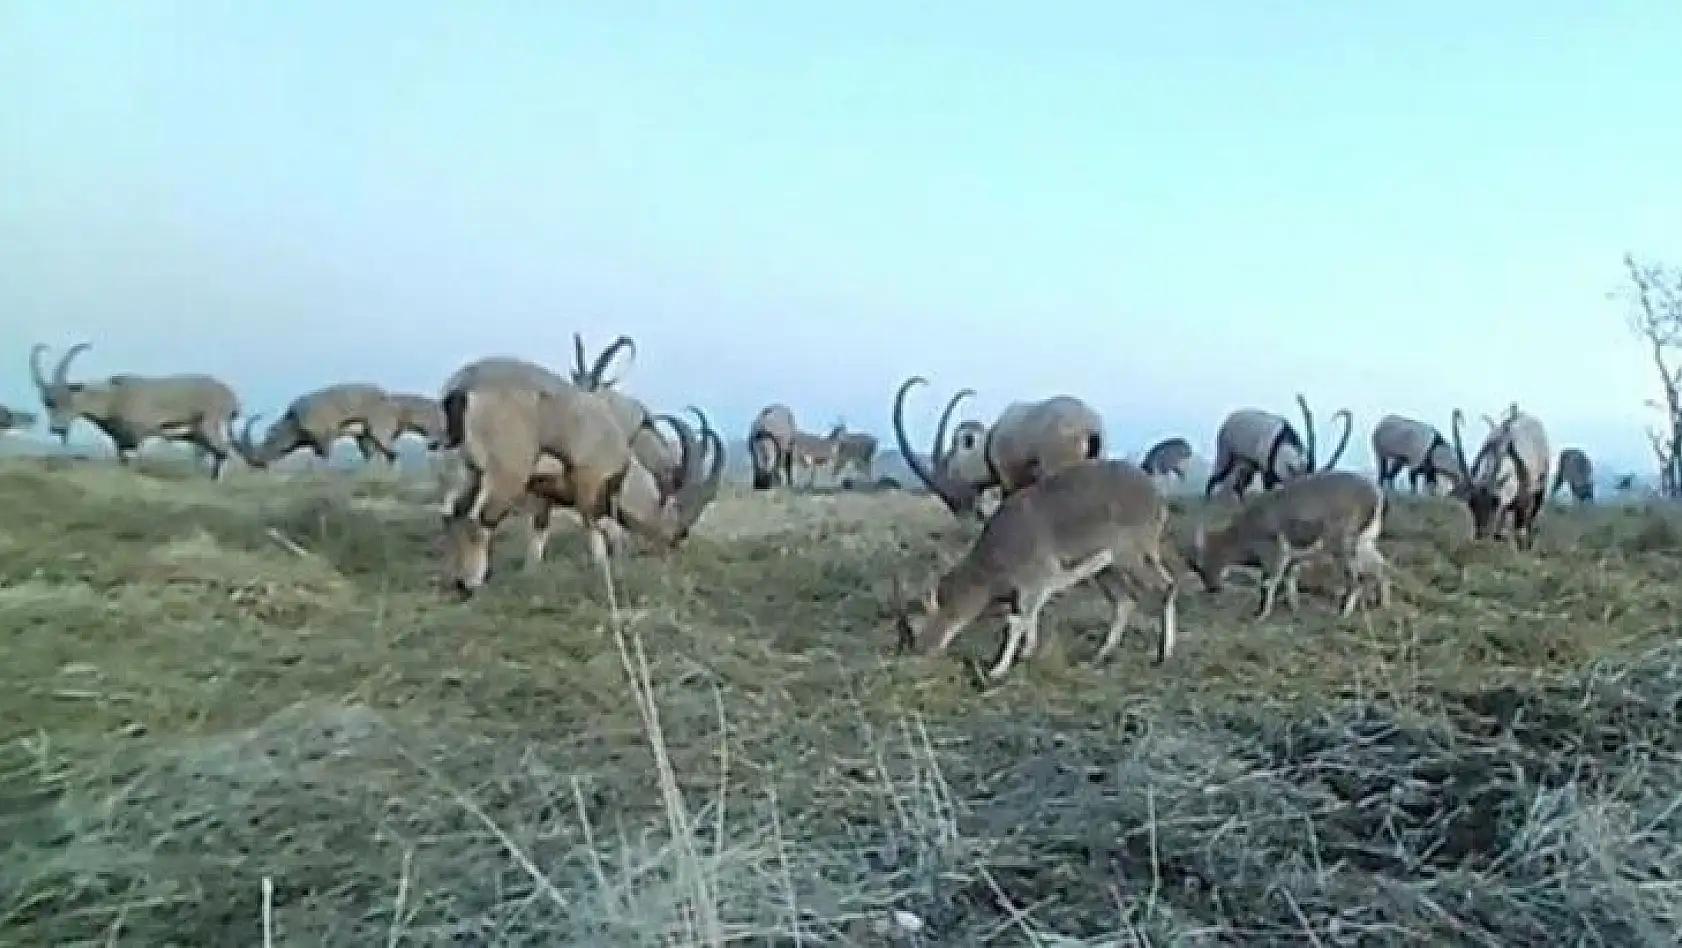 Popülasyonu artan dağ keçileri foto kapanla görüntülendi